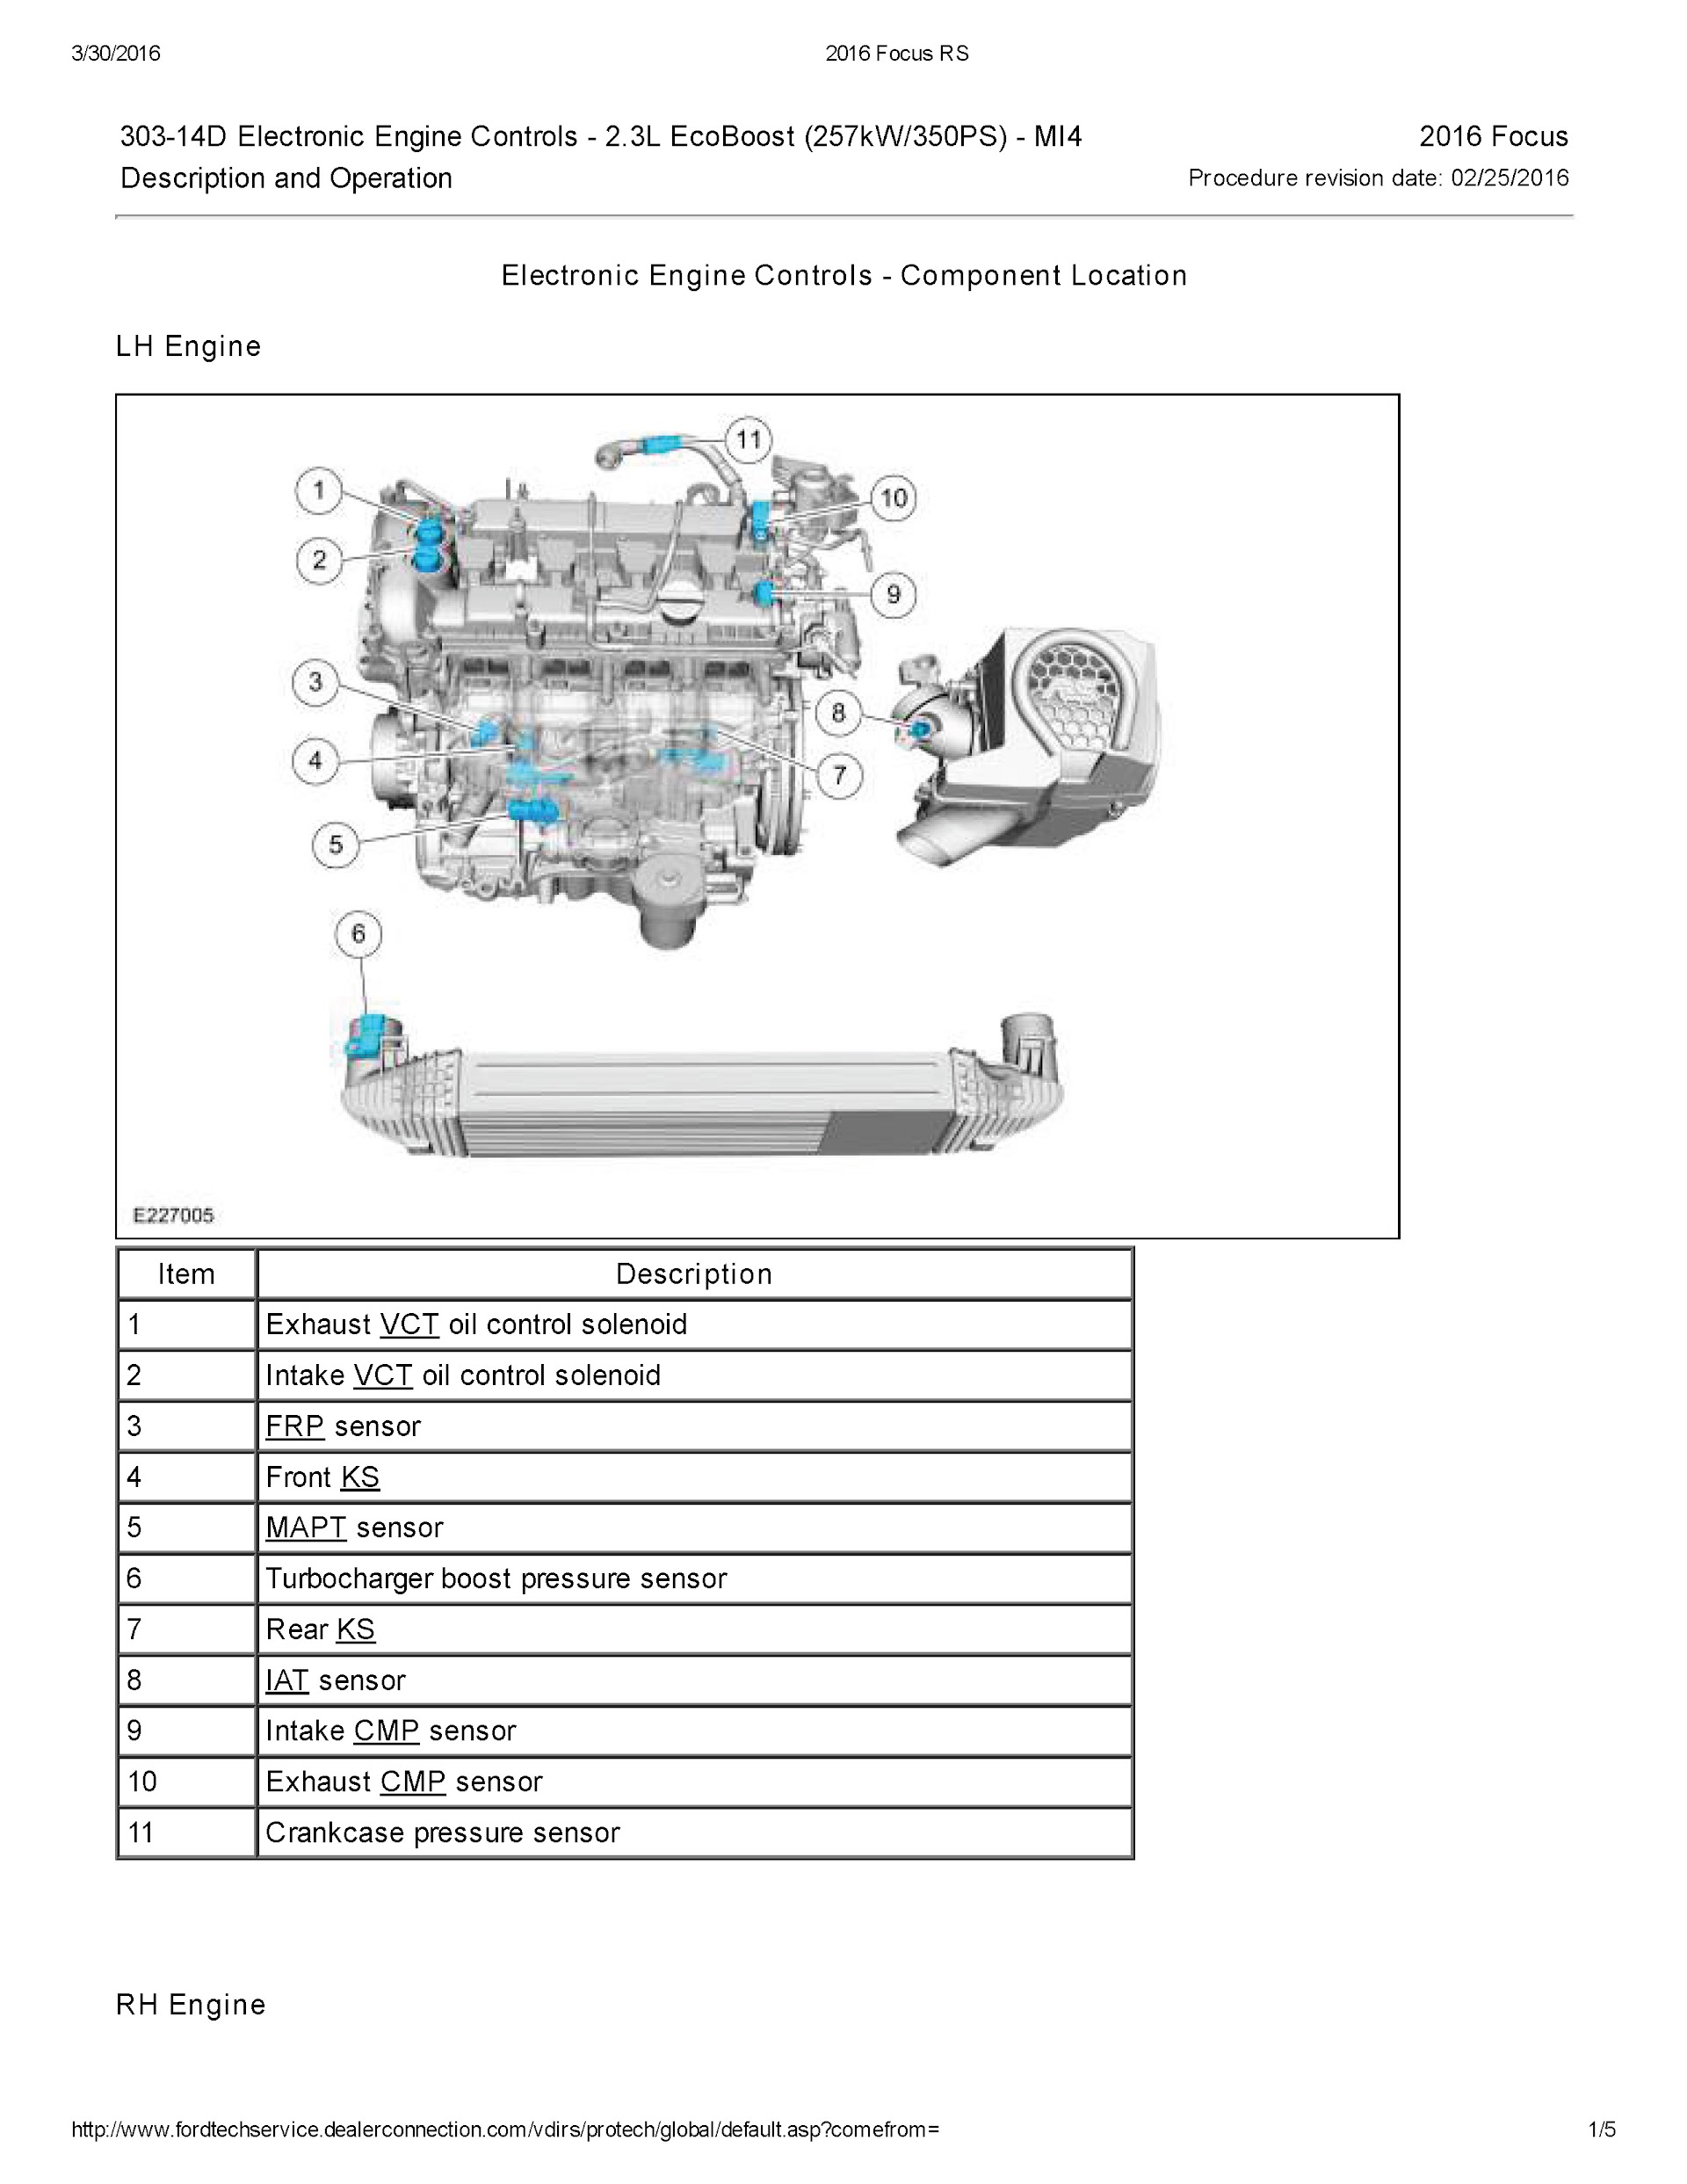 2015-2018 Ford Focus RS MK3 Repair Manual